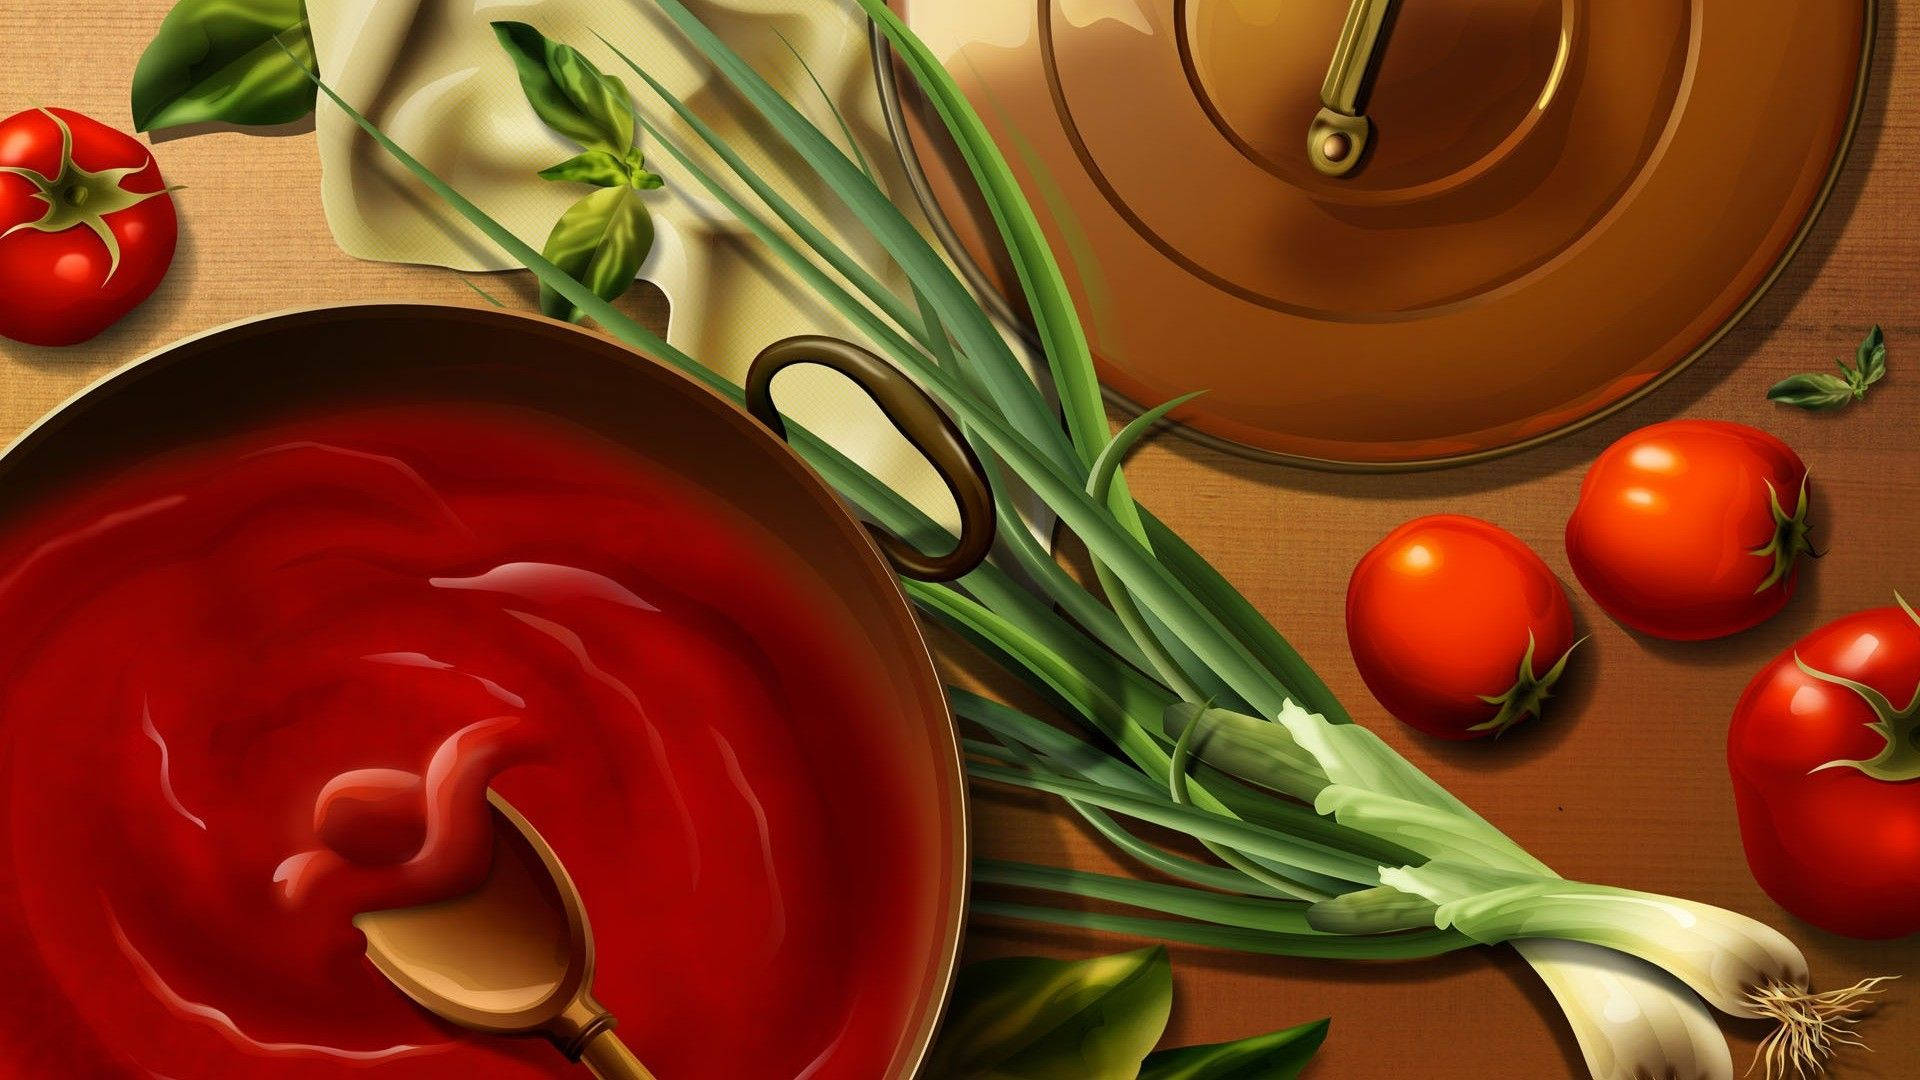 Cooking sauce digital art wallpaper.